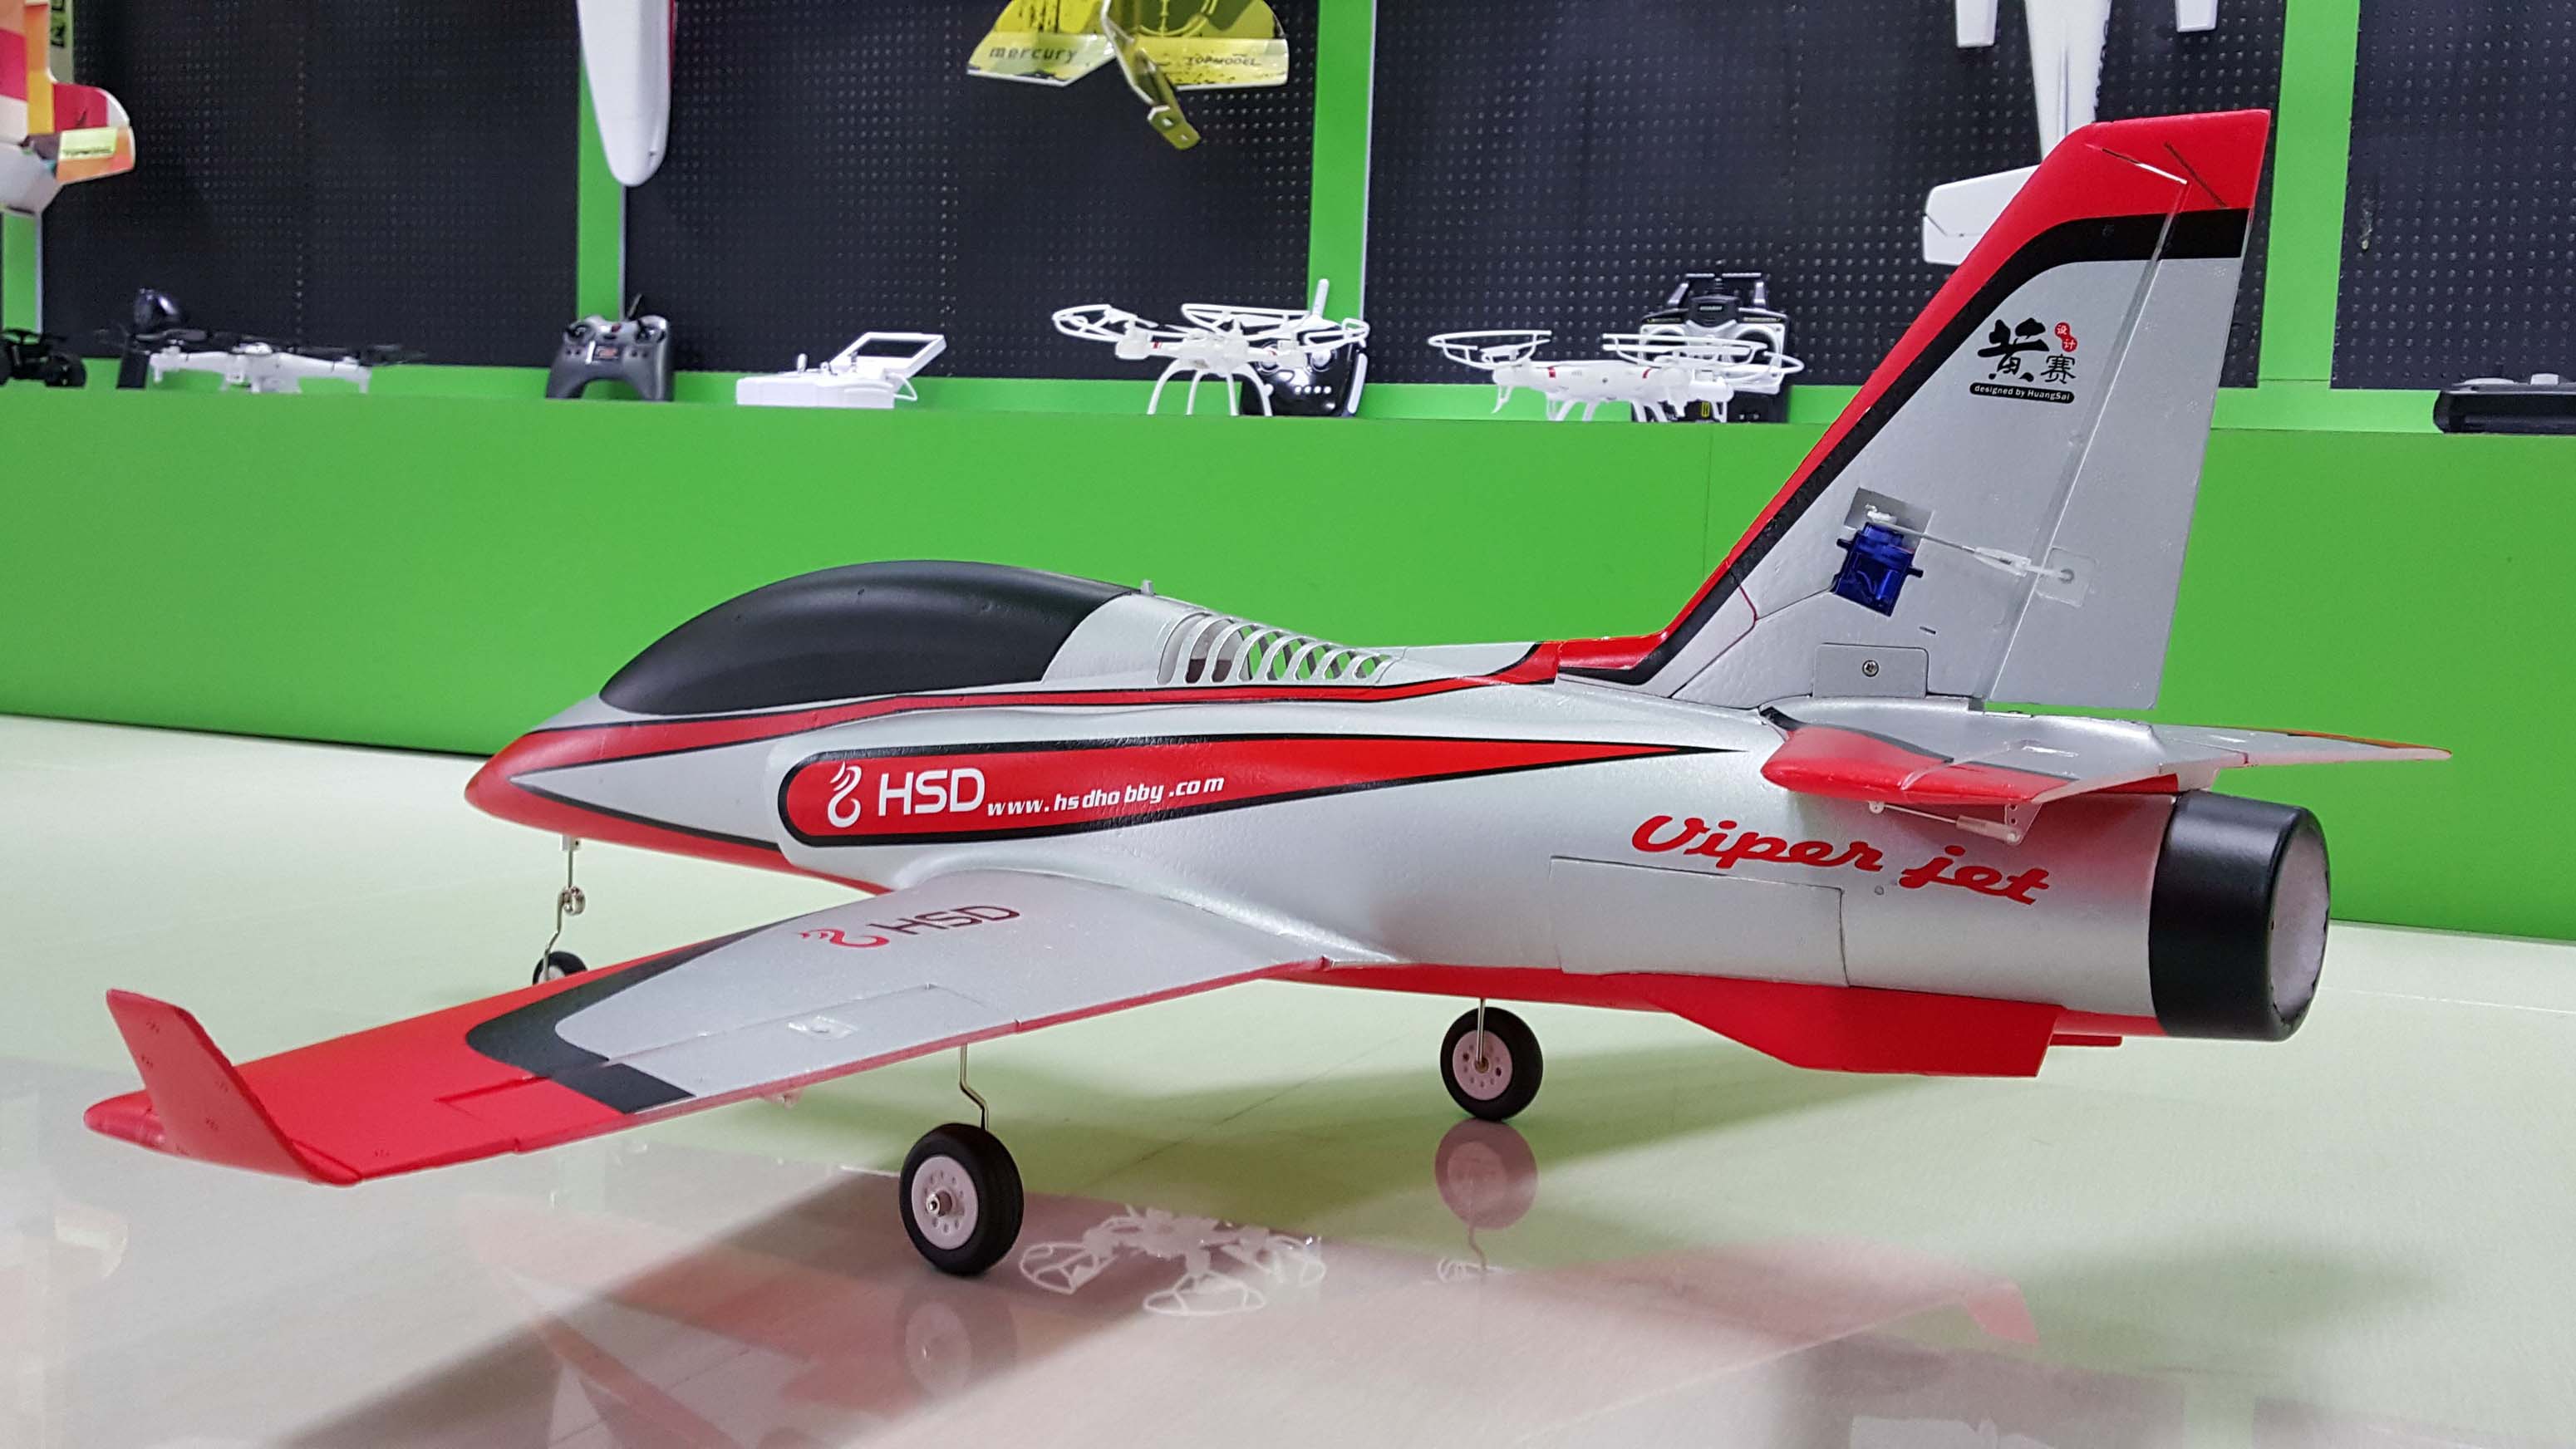 航模飞机厂家,航模飞机制作,航模加盟,遥控飞机,玩具飞机图片 航模